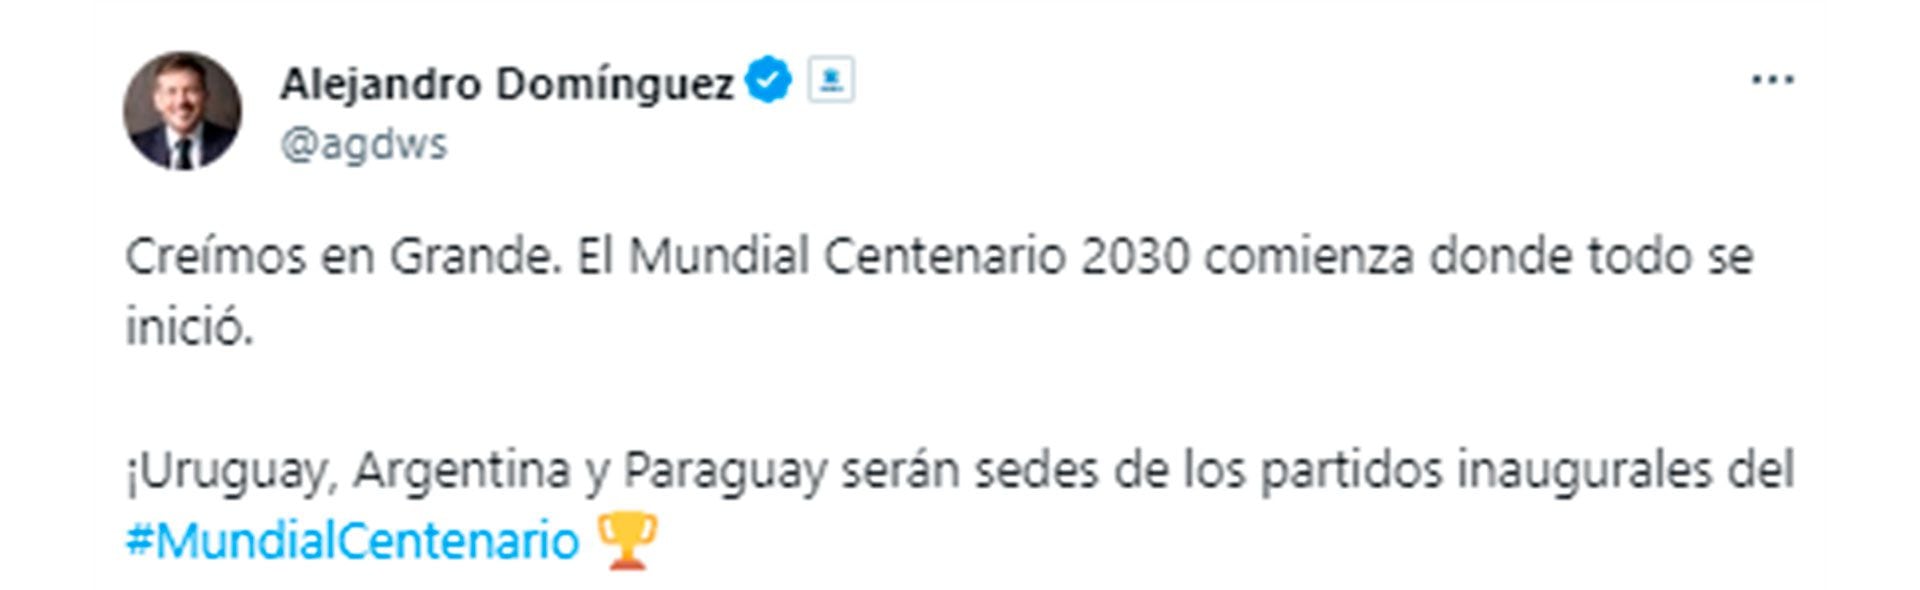 El tuit de Alejandro Domínguez